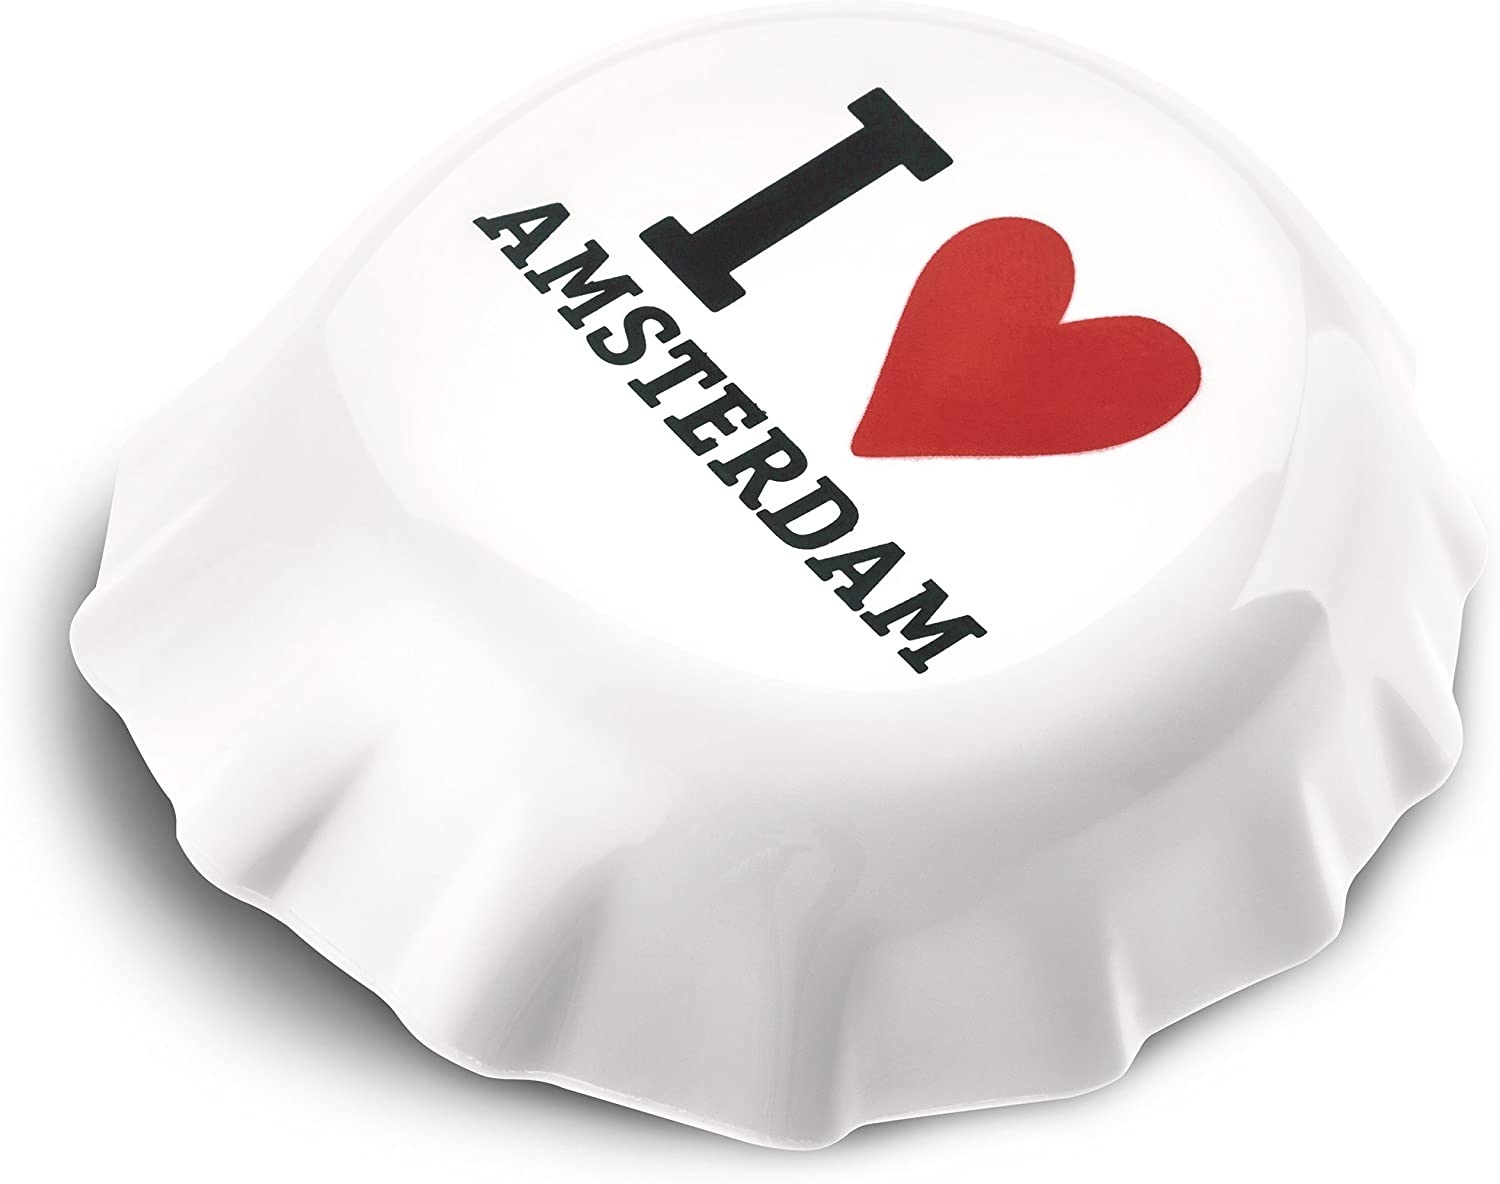 Koziol Plopp I Love Amsterdam Bottle Opener, Bottle Opener, Bottle Opener, Plastic, white/black/red, 3778525